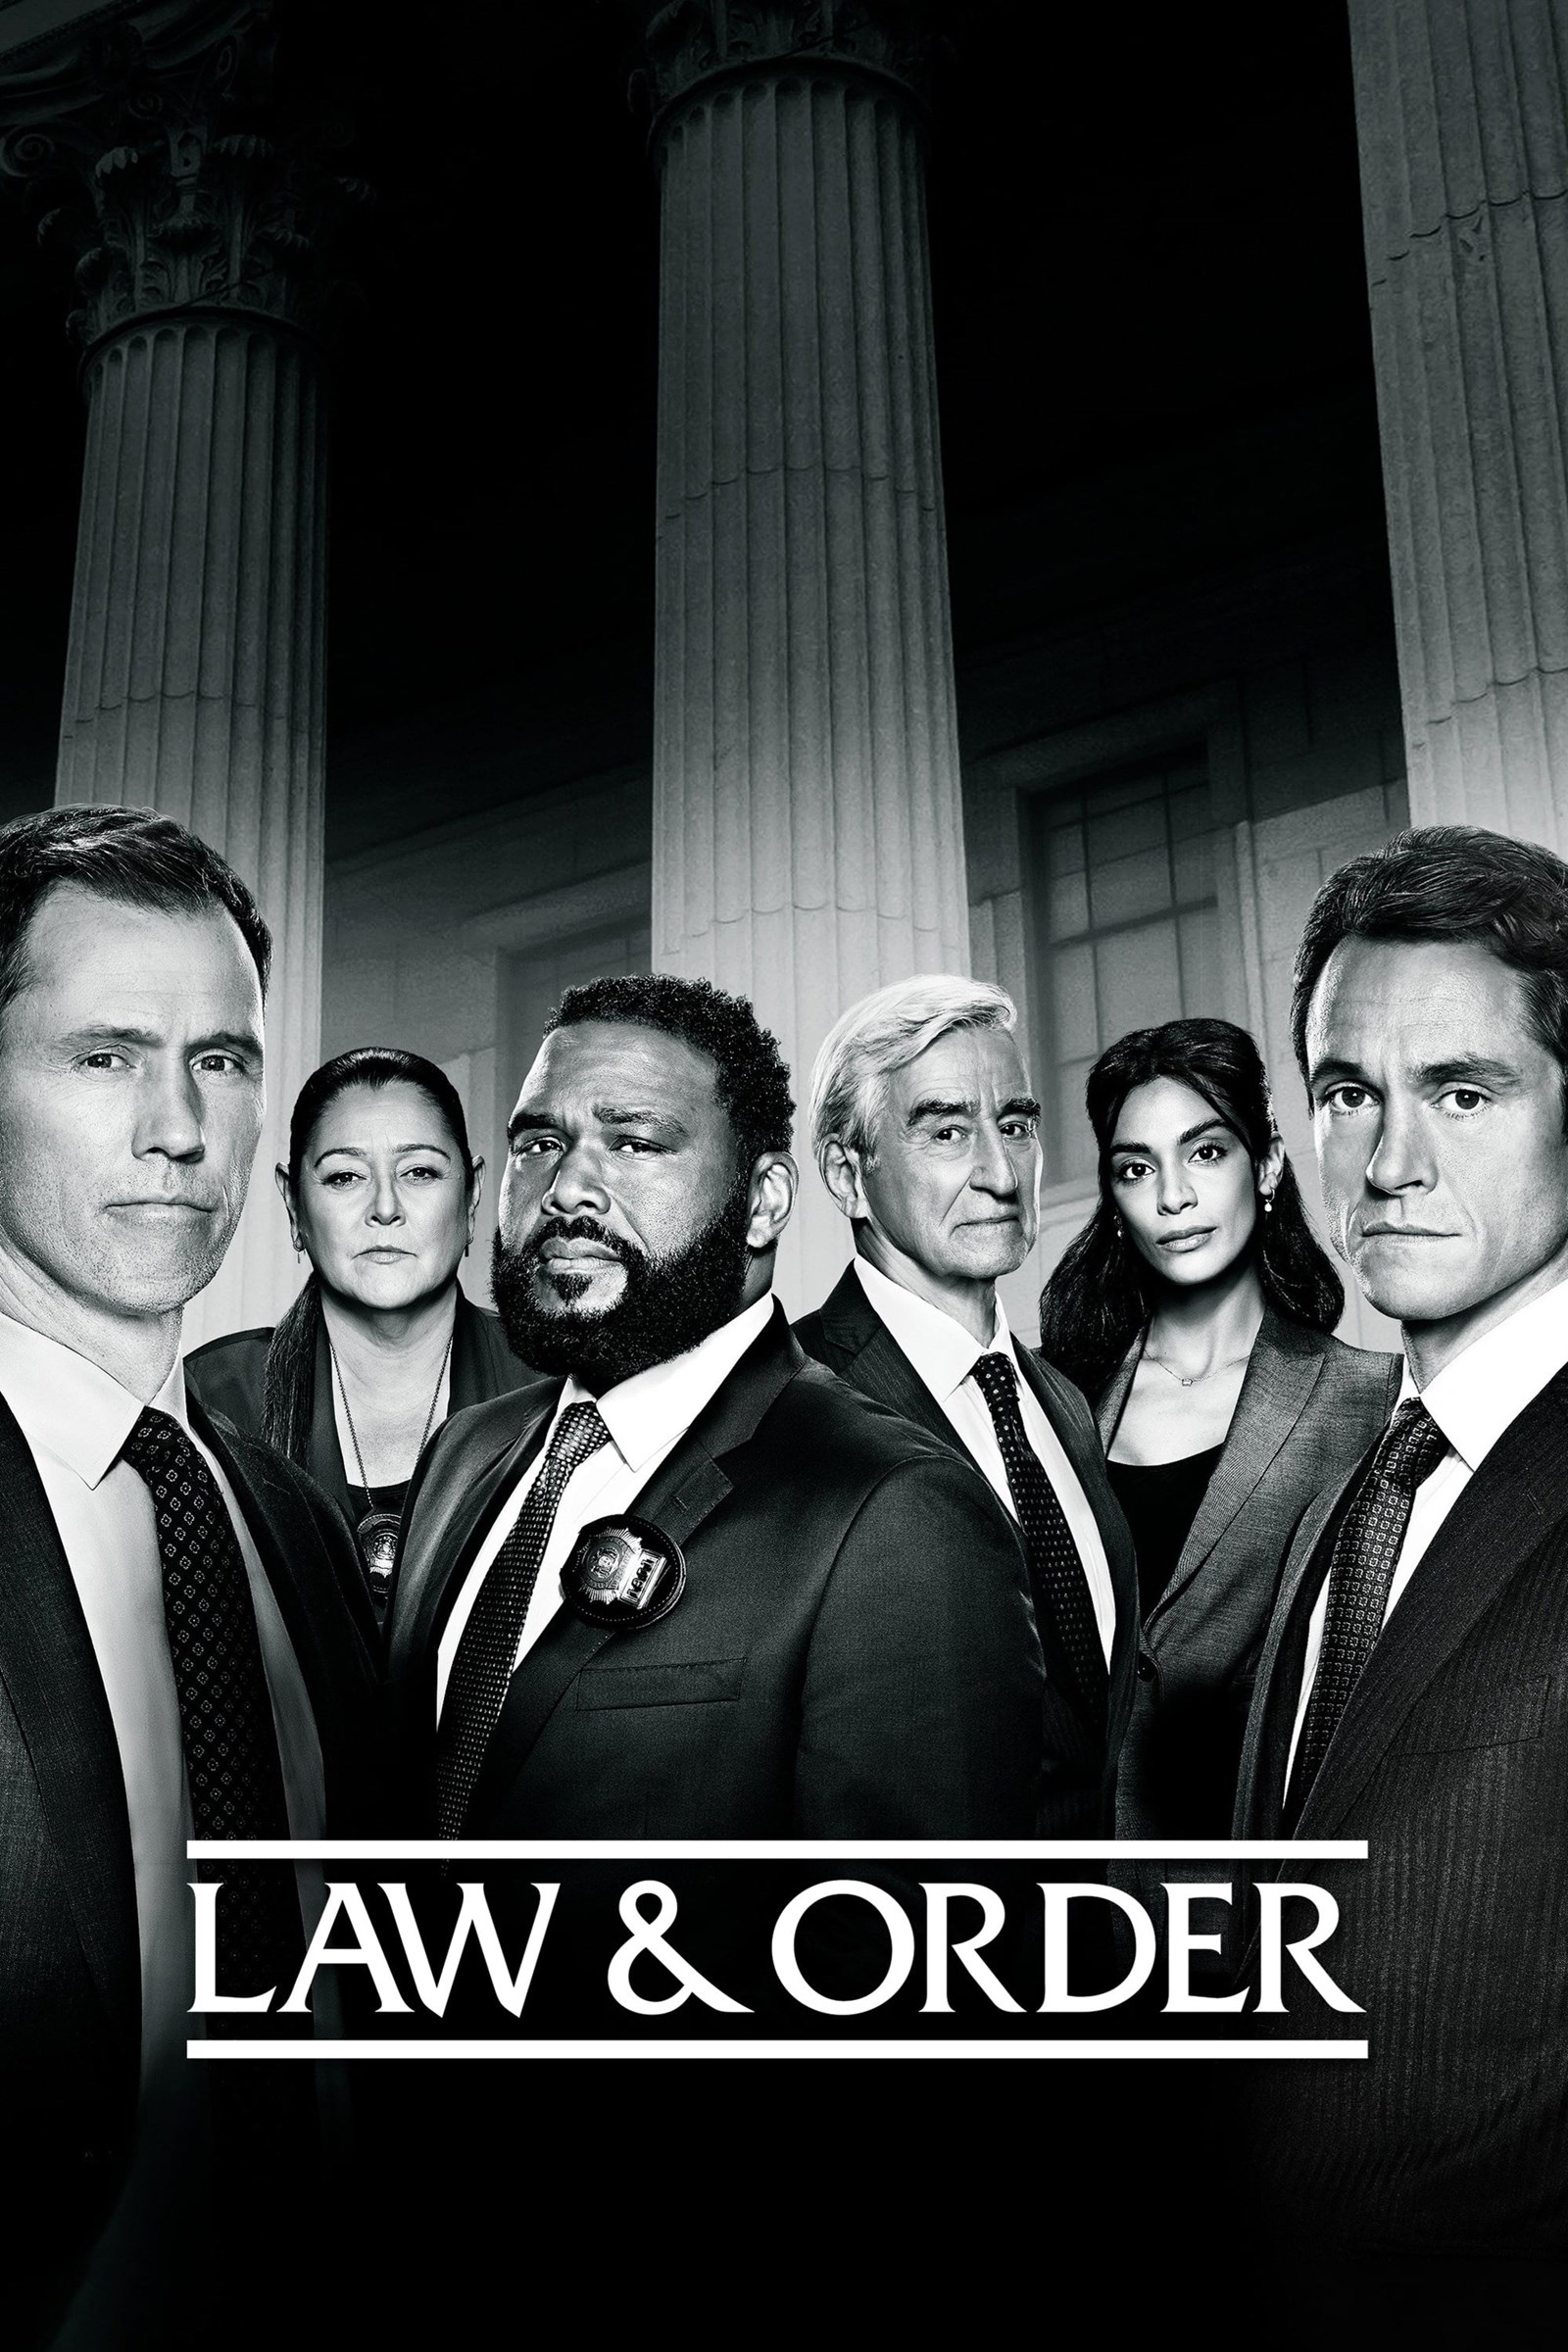 مشاهدة مسلسل Law & Order الموسم 21 الحادي والعشرون الحلقة 5 الخامسة مترجمة